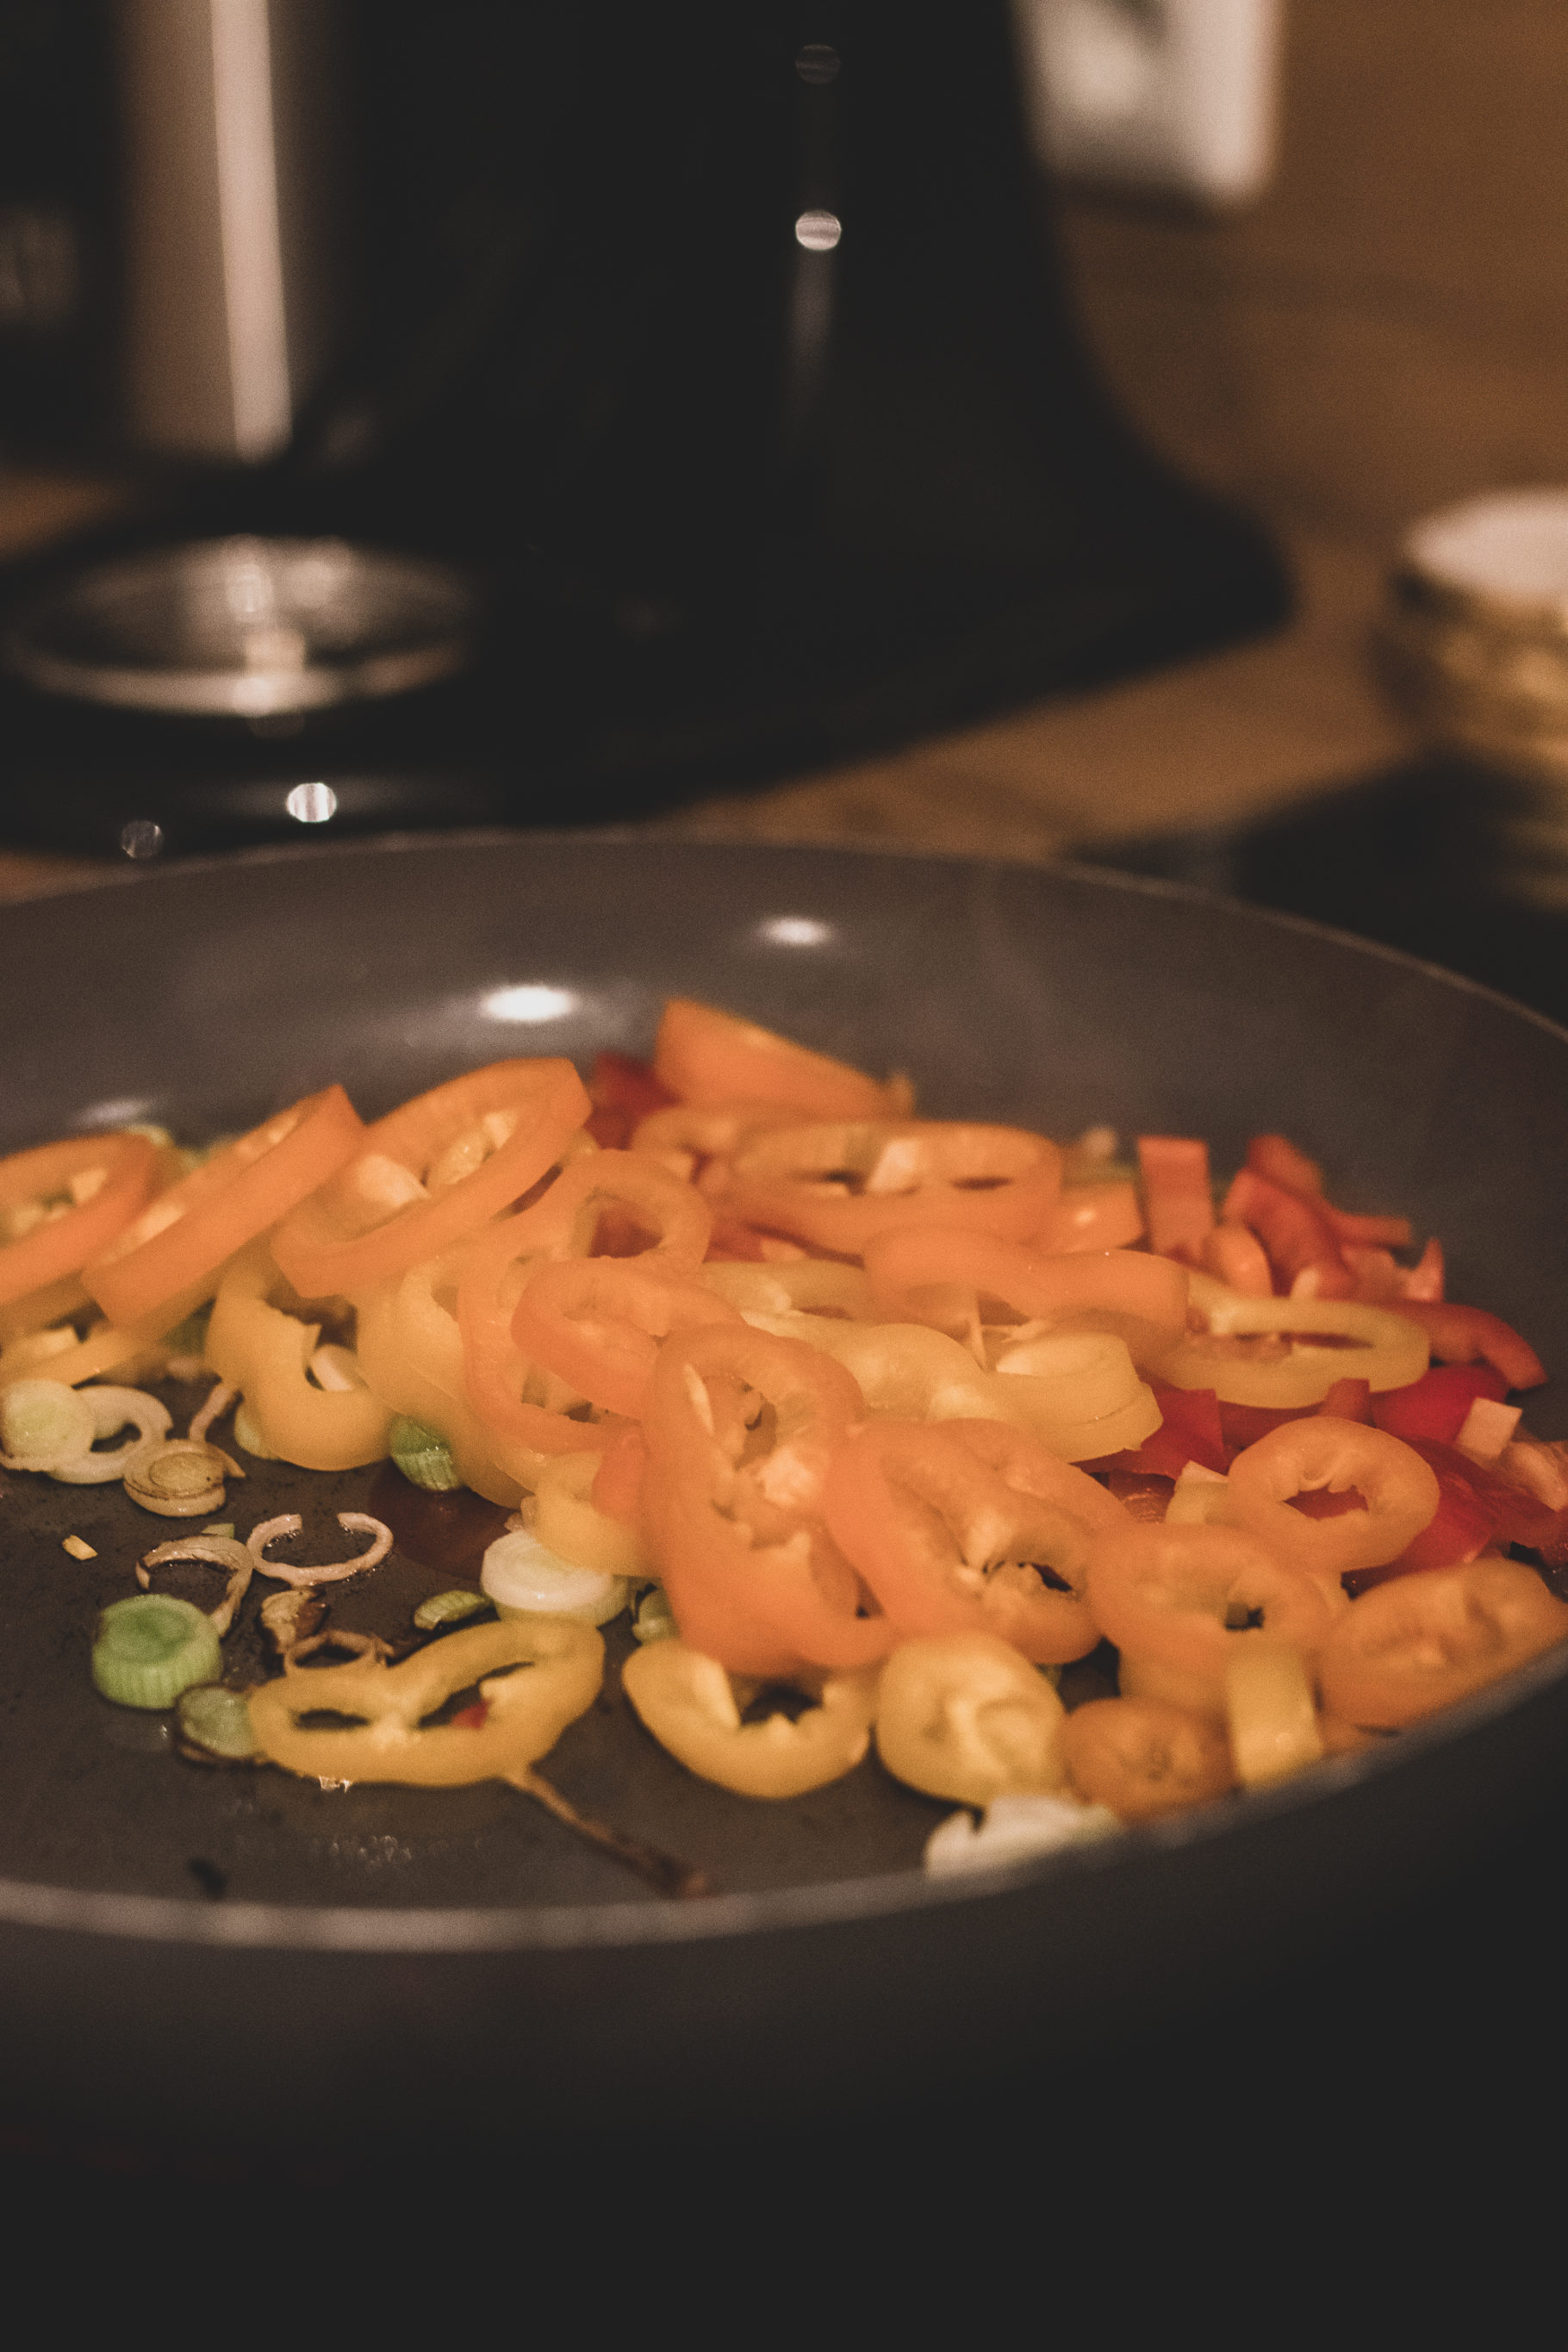 Rezept: Gnocchi mit buntem Paprika-Gemüse auf dem österreichsichen Lifestyle Blo Bits and Bobs by Eva. Mehr Gesundes auf www.bitsandbobsbyeva.com